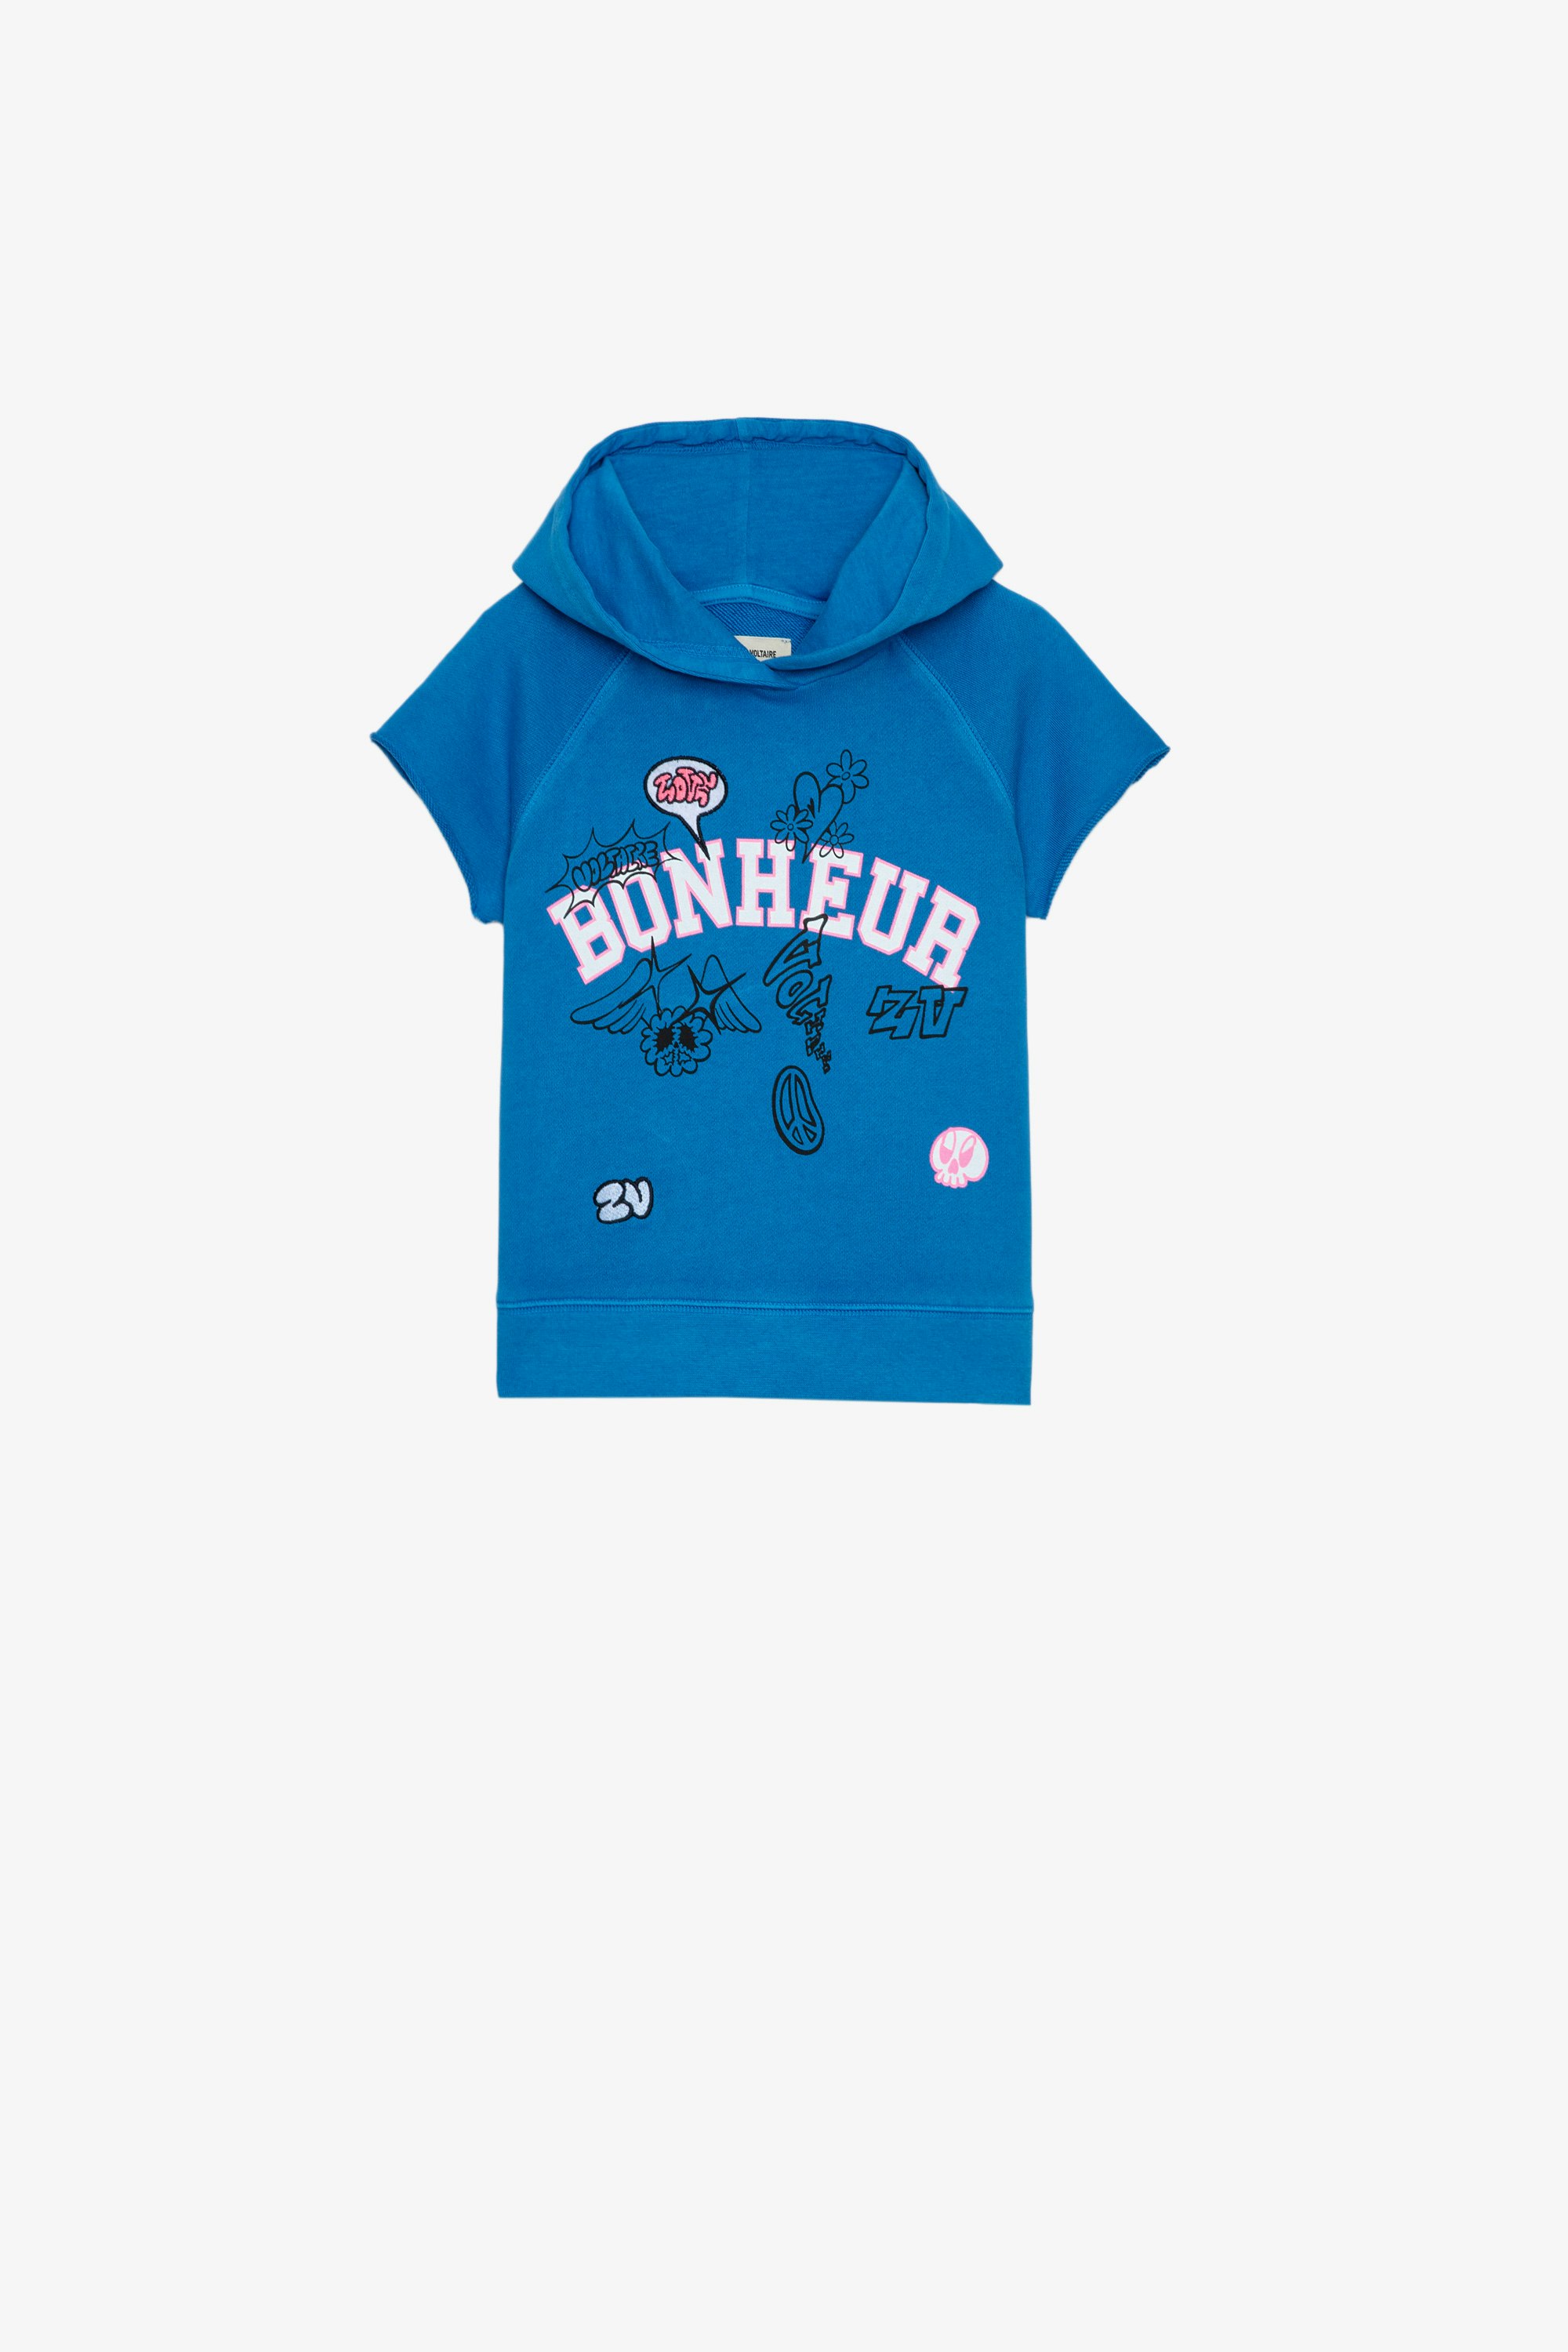 Sudadera Gorgia Infantil Sudadera sin mangas azul de algodón infantil con capucha, mensaje «Bonheur» y bordados